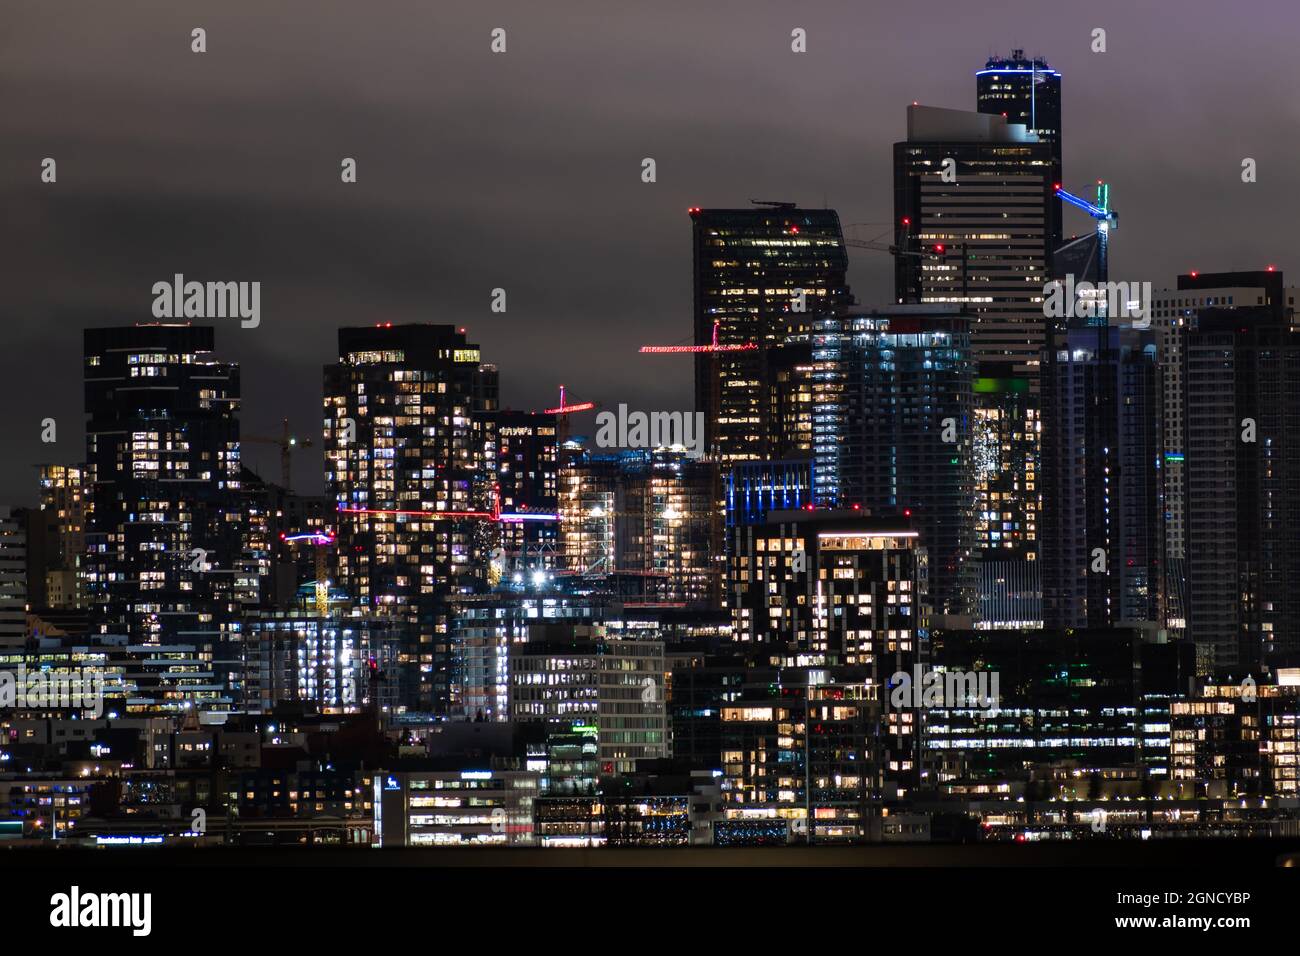 Seattle skyline at night Stock Photo